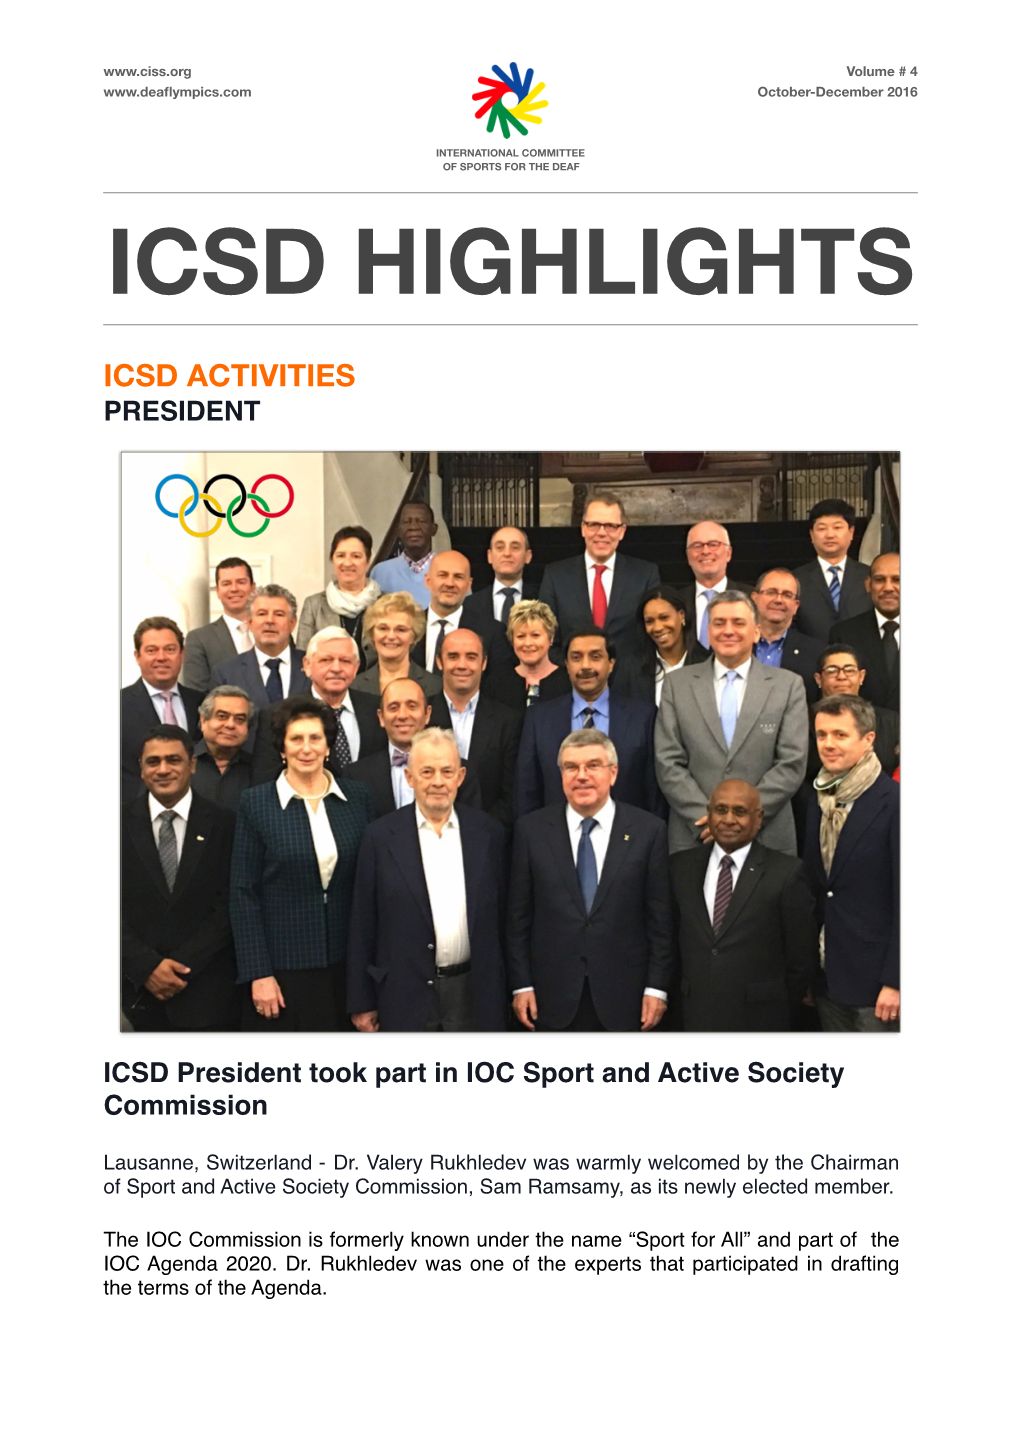 ICSD Highlights October